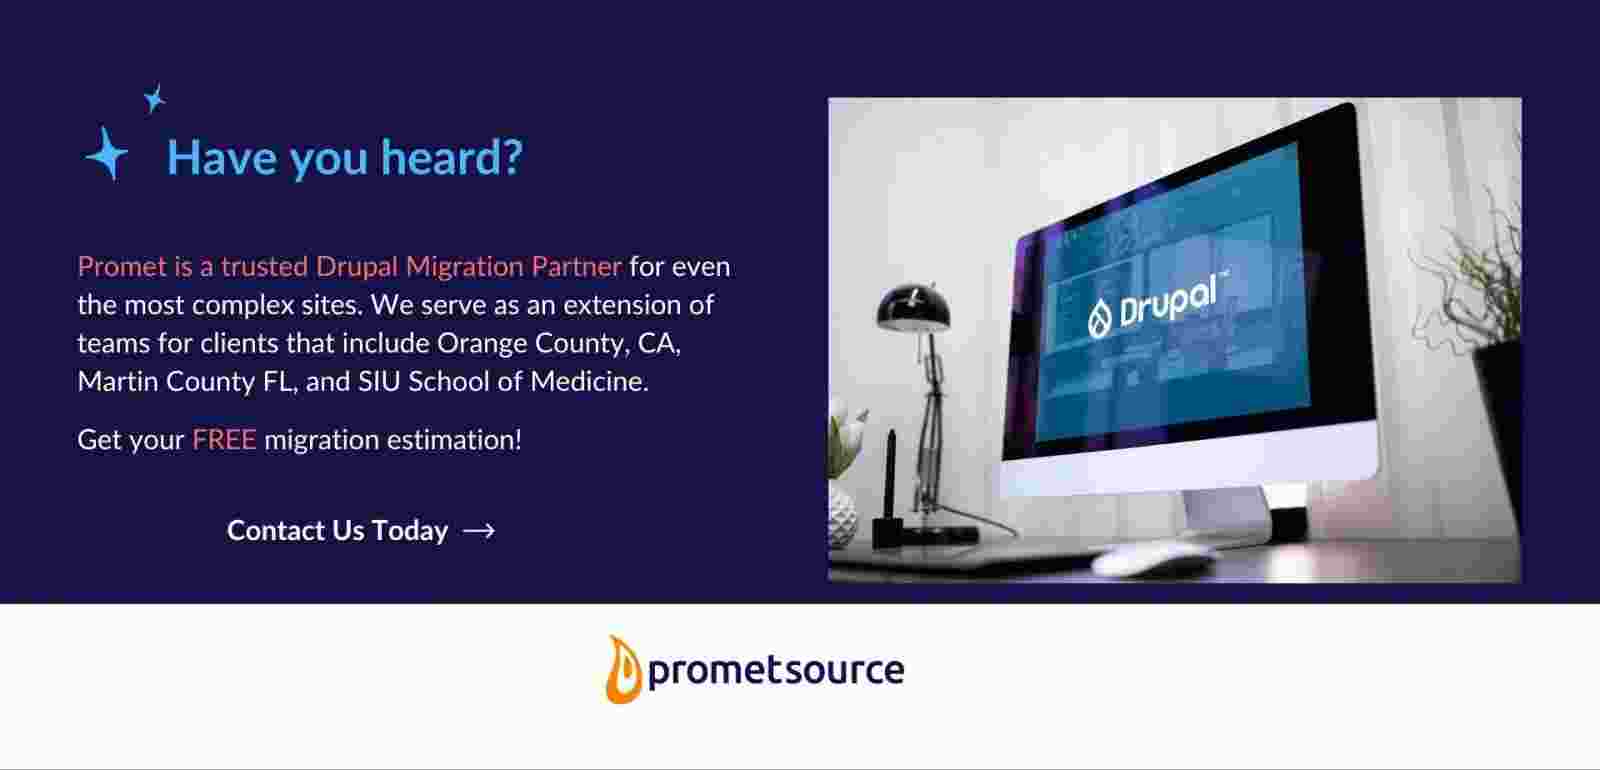 Promet Source is a trusted Drupal migration partner